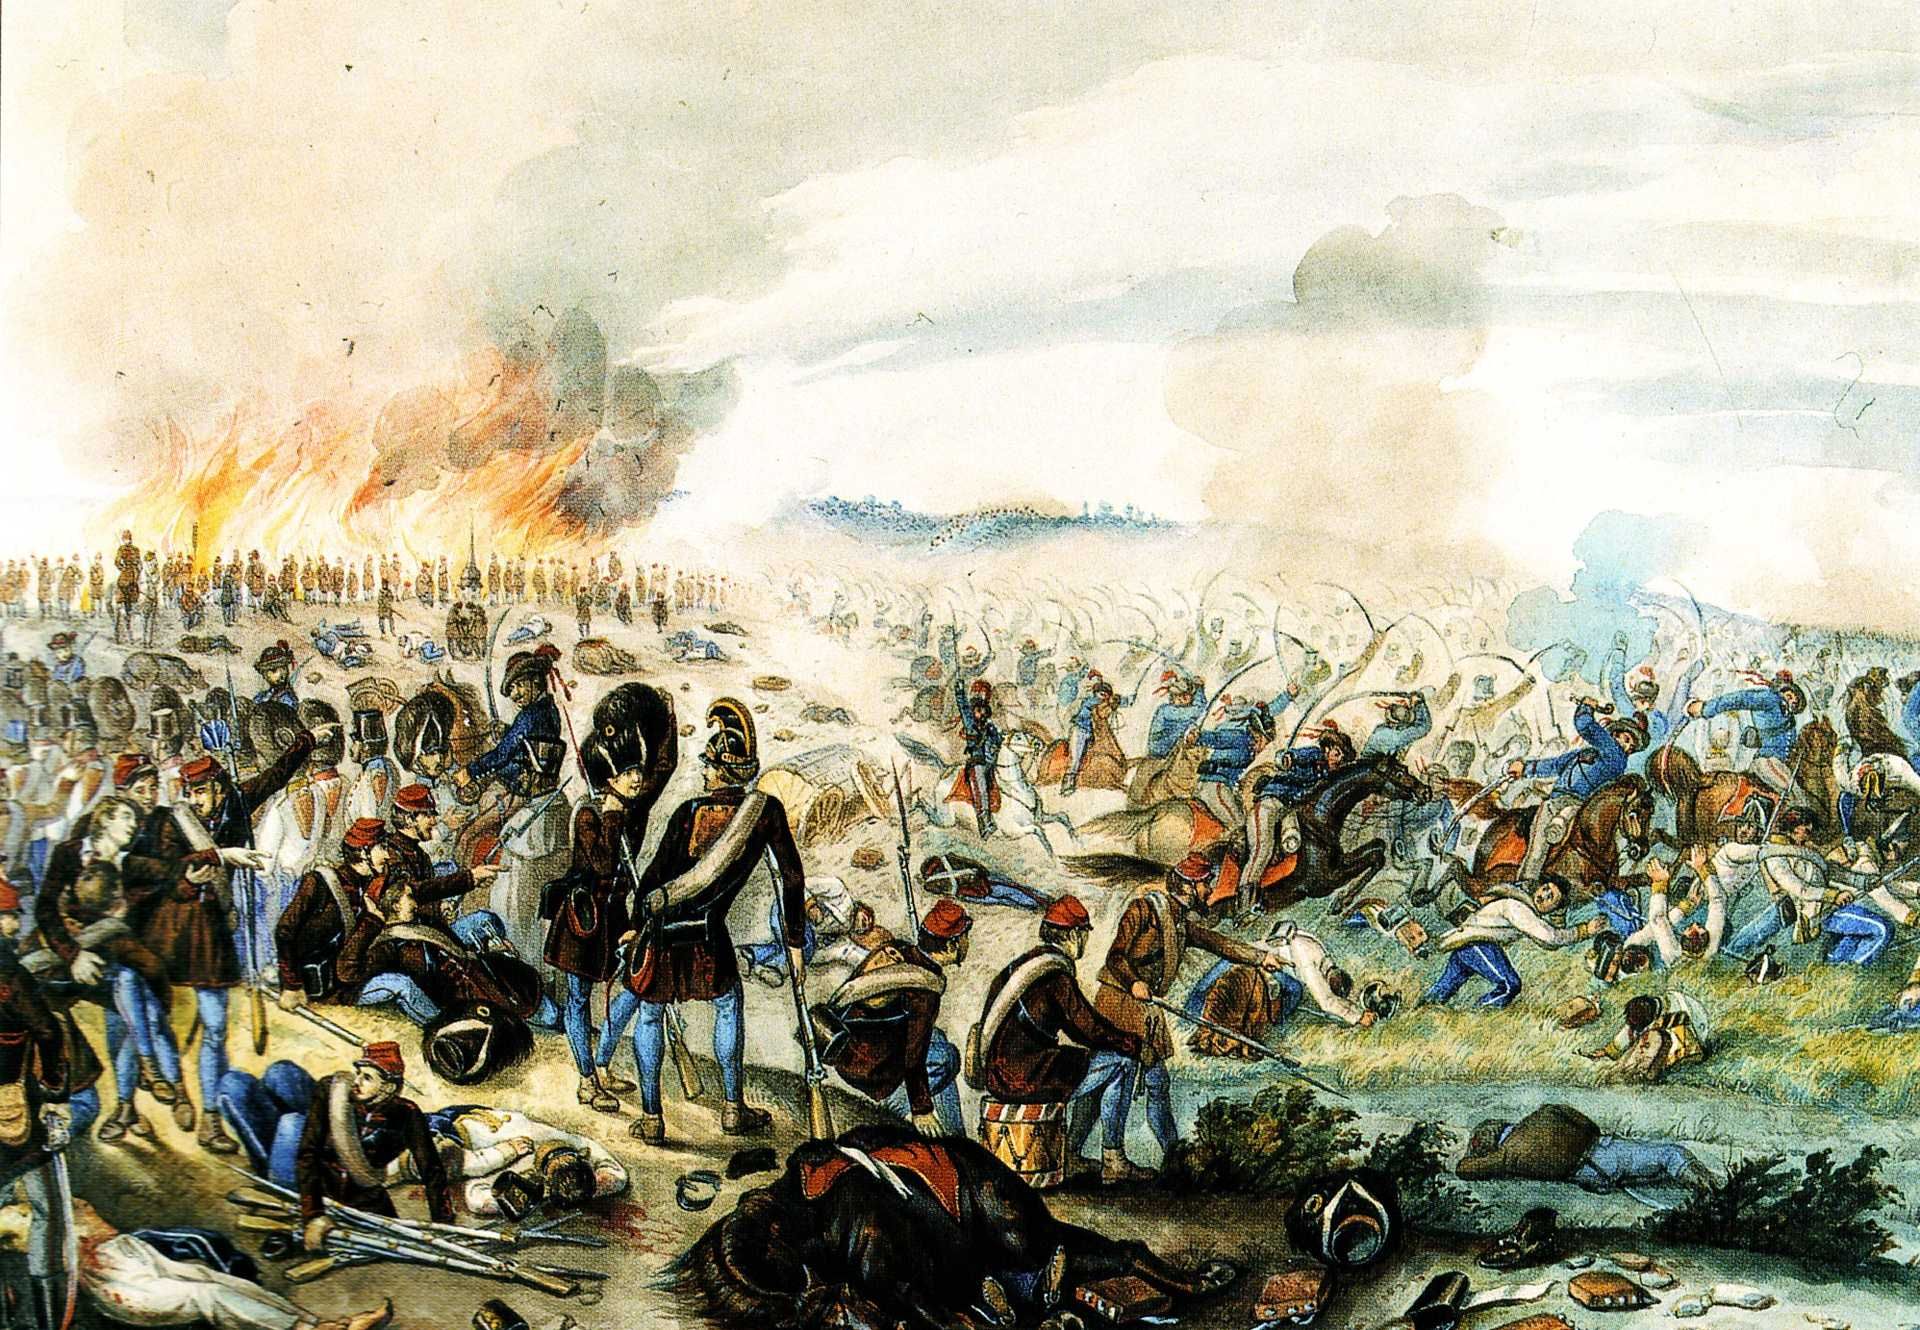 La cavalerie hongroise poursuivant les contre-révolutionnaires dans la bataille de Nagysaló, le 19 avril 1849. Peinture à l’huile de Than Mór.